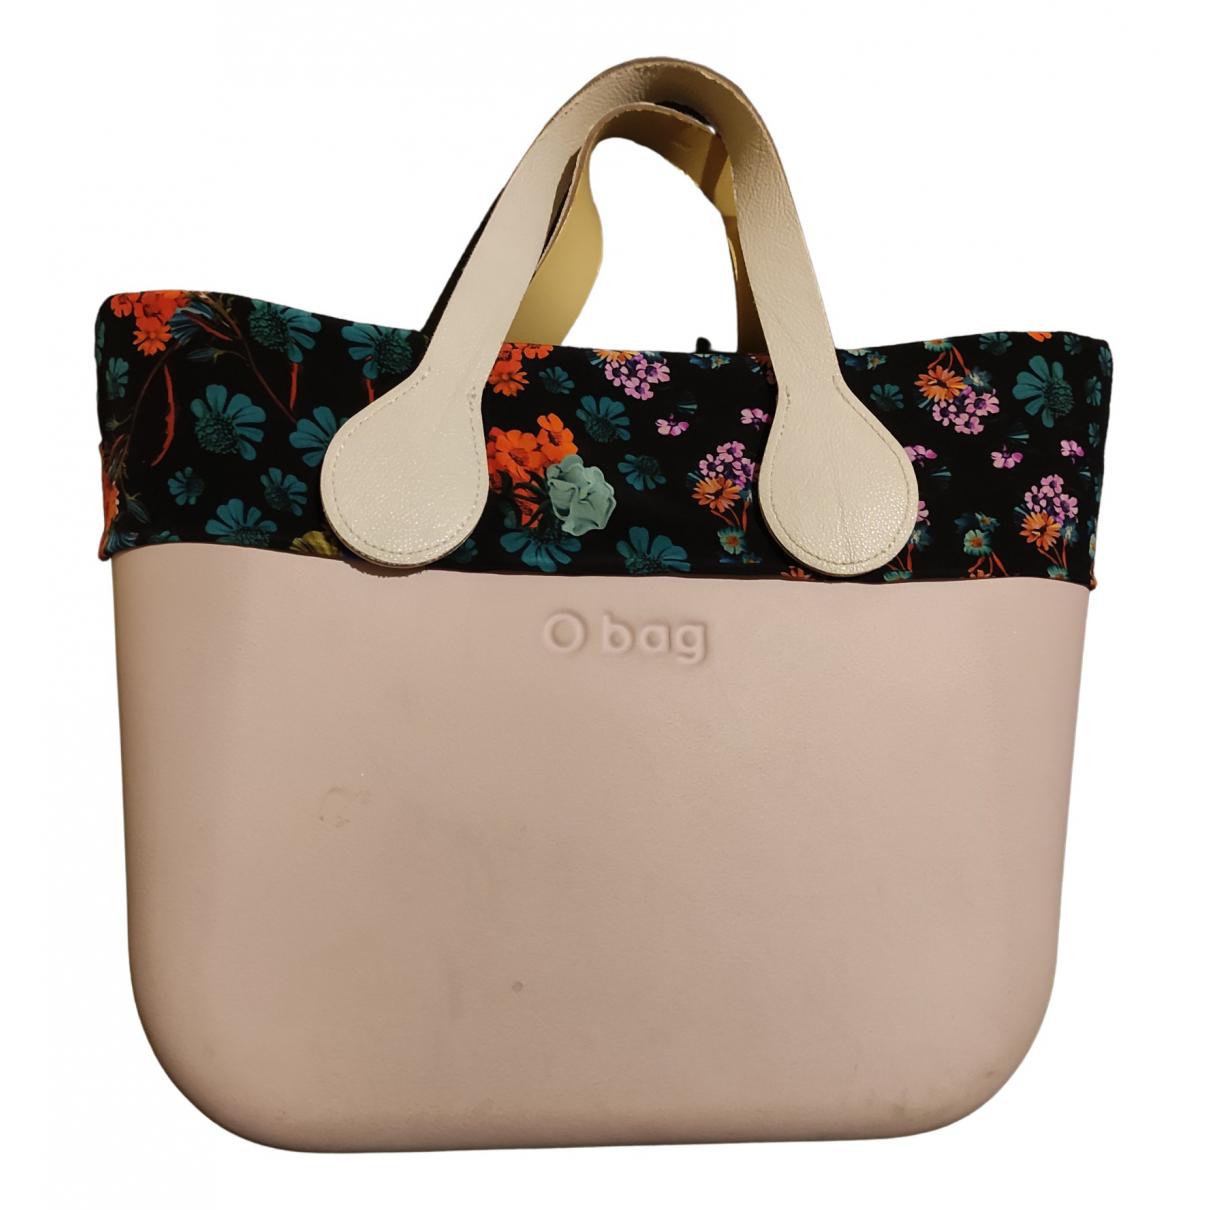 Borse O bag in Plastica Rosa - 17817490